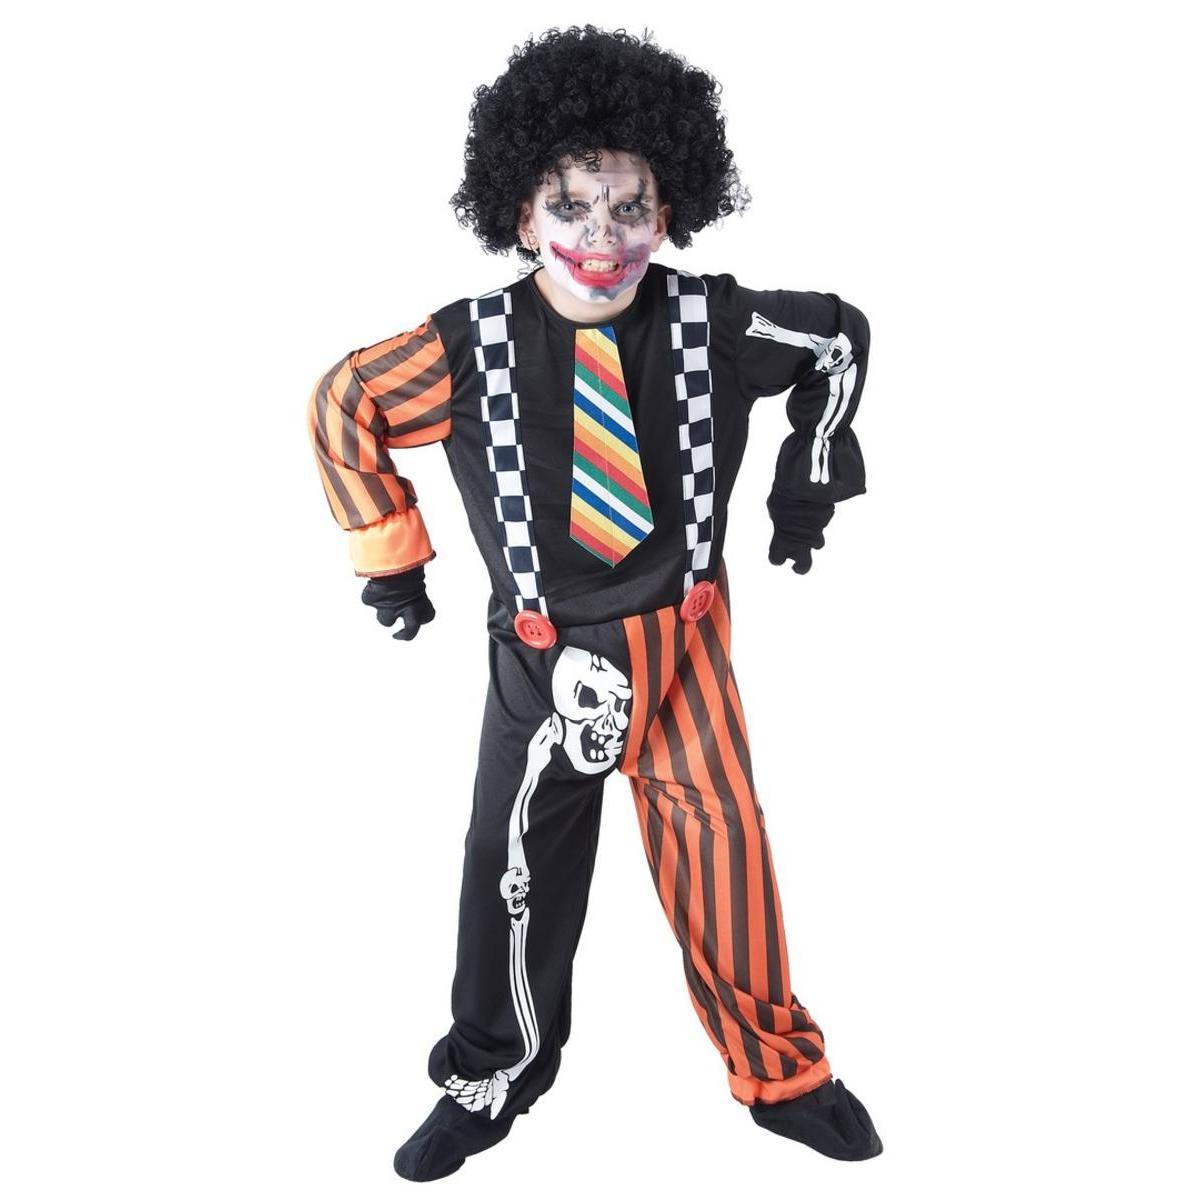 Costume clown de l'horreur - Taille enfant (S) - L 40 x H 2 x l 30 cm - Multicolore - PTIT CLOWN